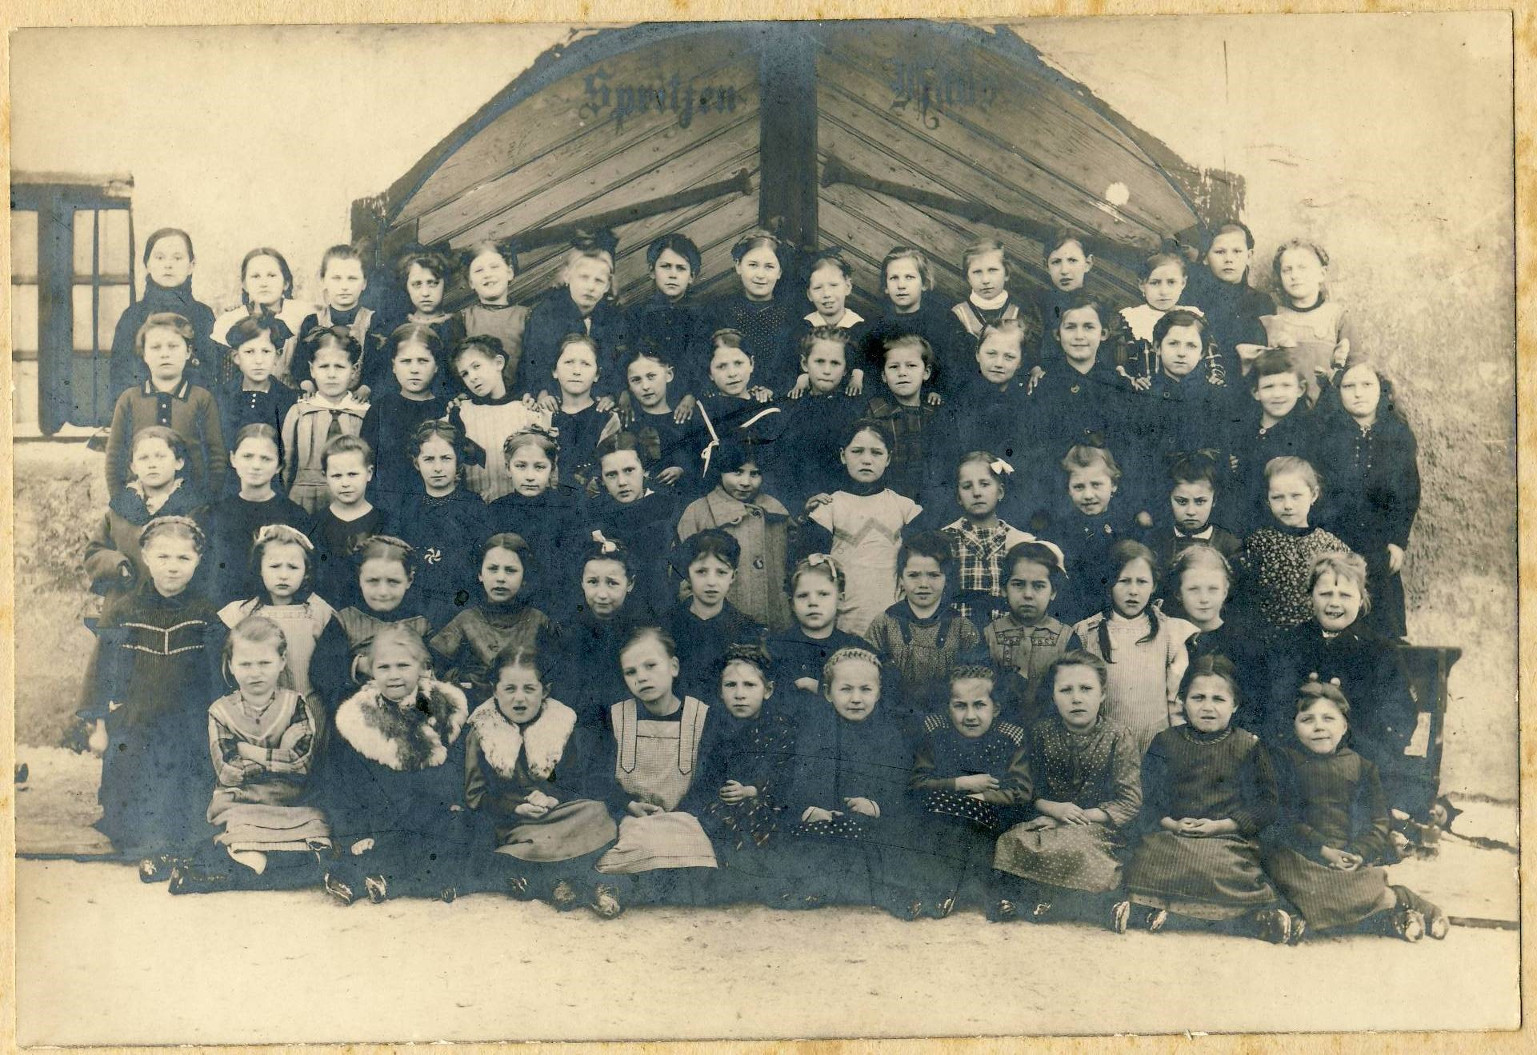 Wahrscheinlich mehrere Mädchenjahrgänge um 1916/1917, aufgenommen im Schlosshof Burgau